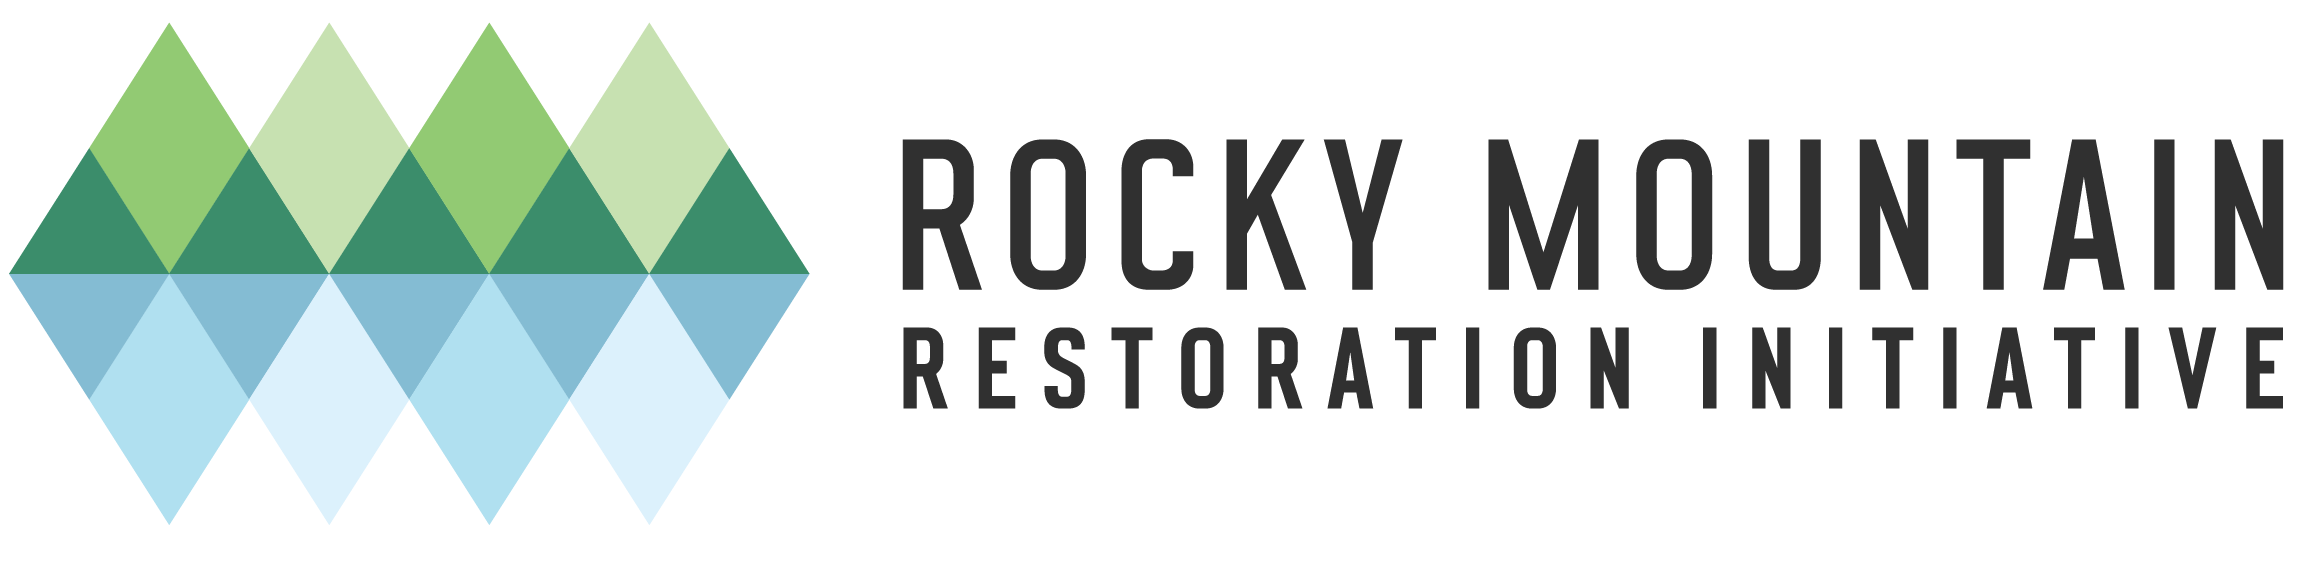 Rocky Mountain Restoration Initiative